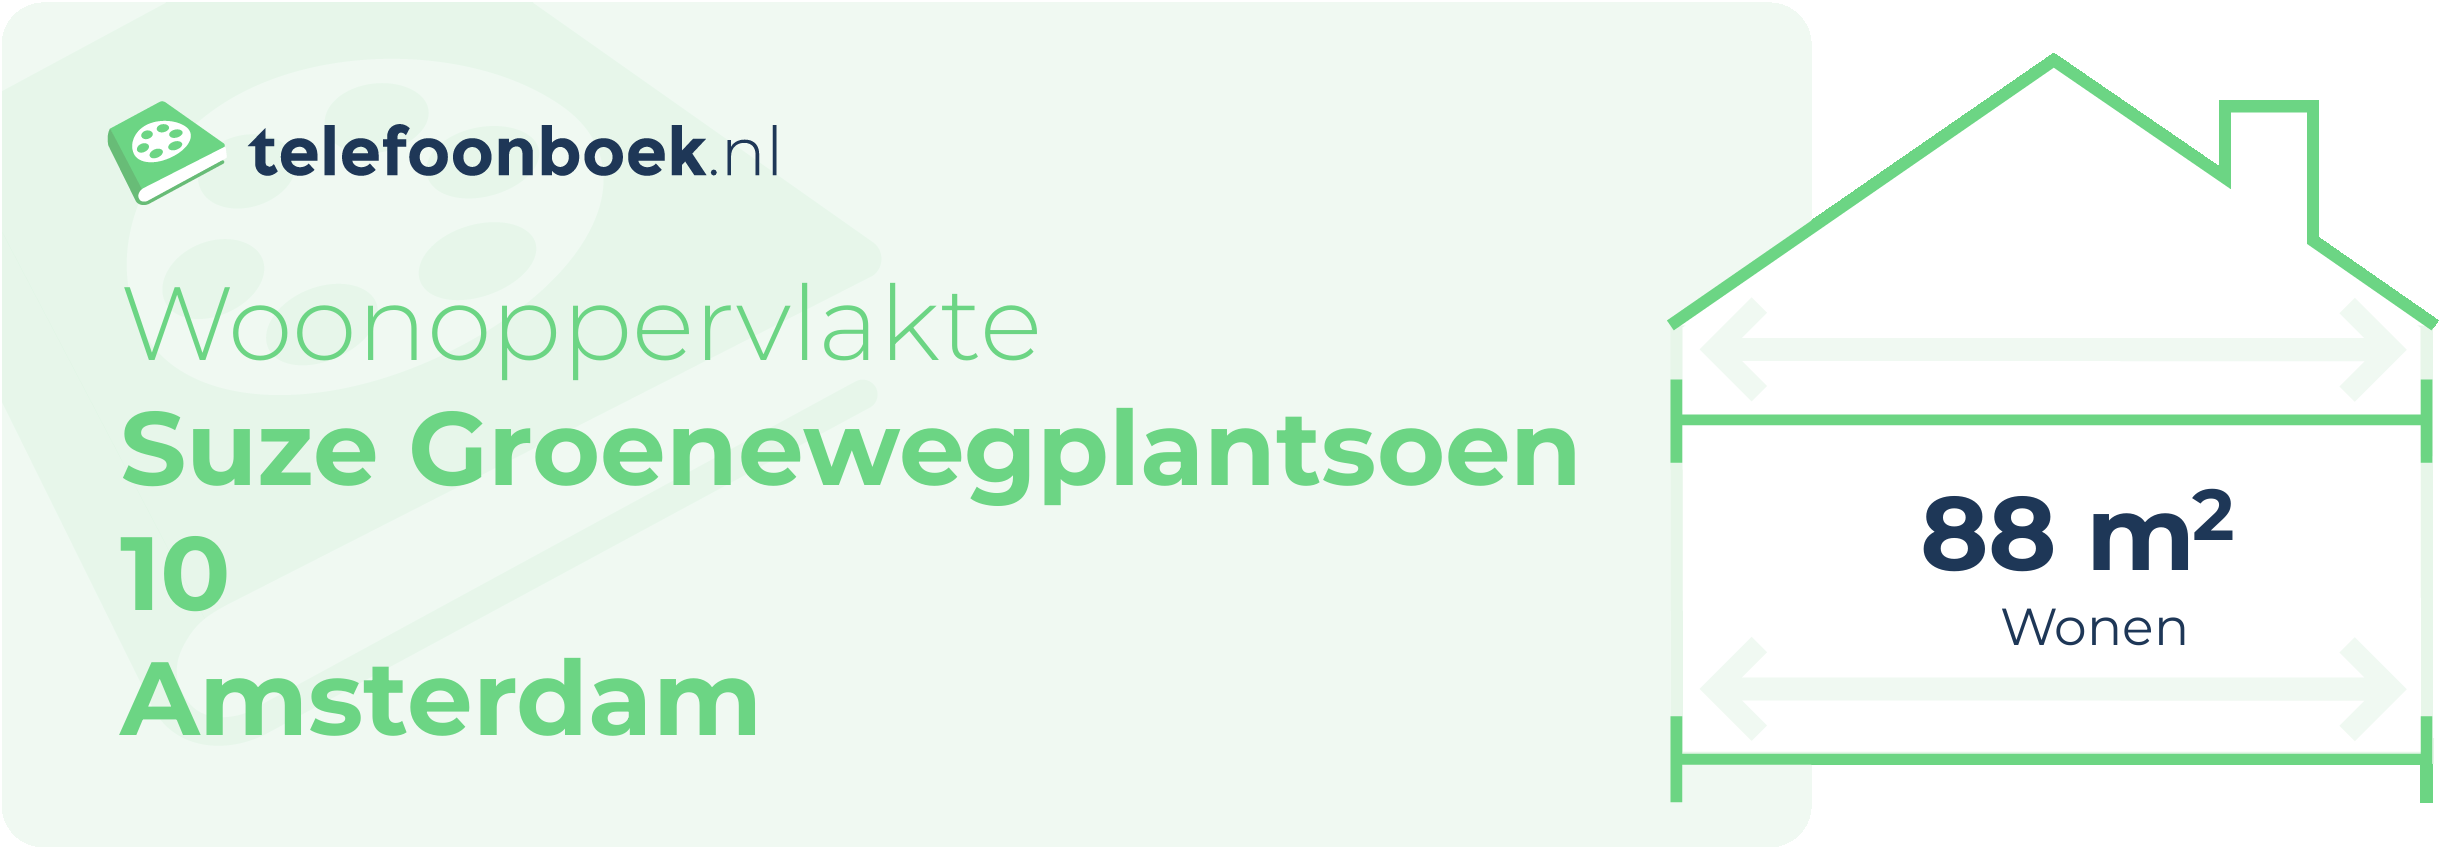 Woonoppervlakte Suze Groenewegplantsoen 10 Amsterdam